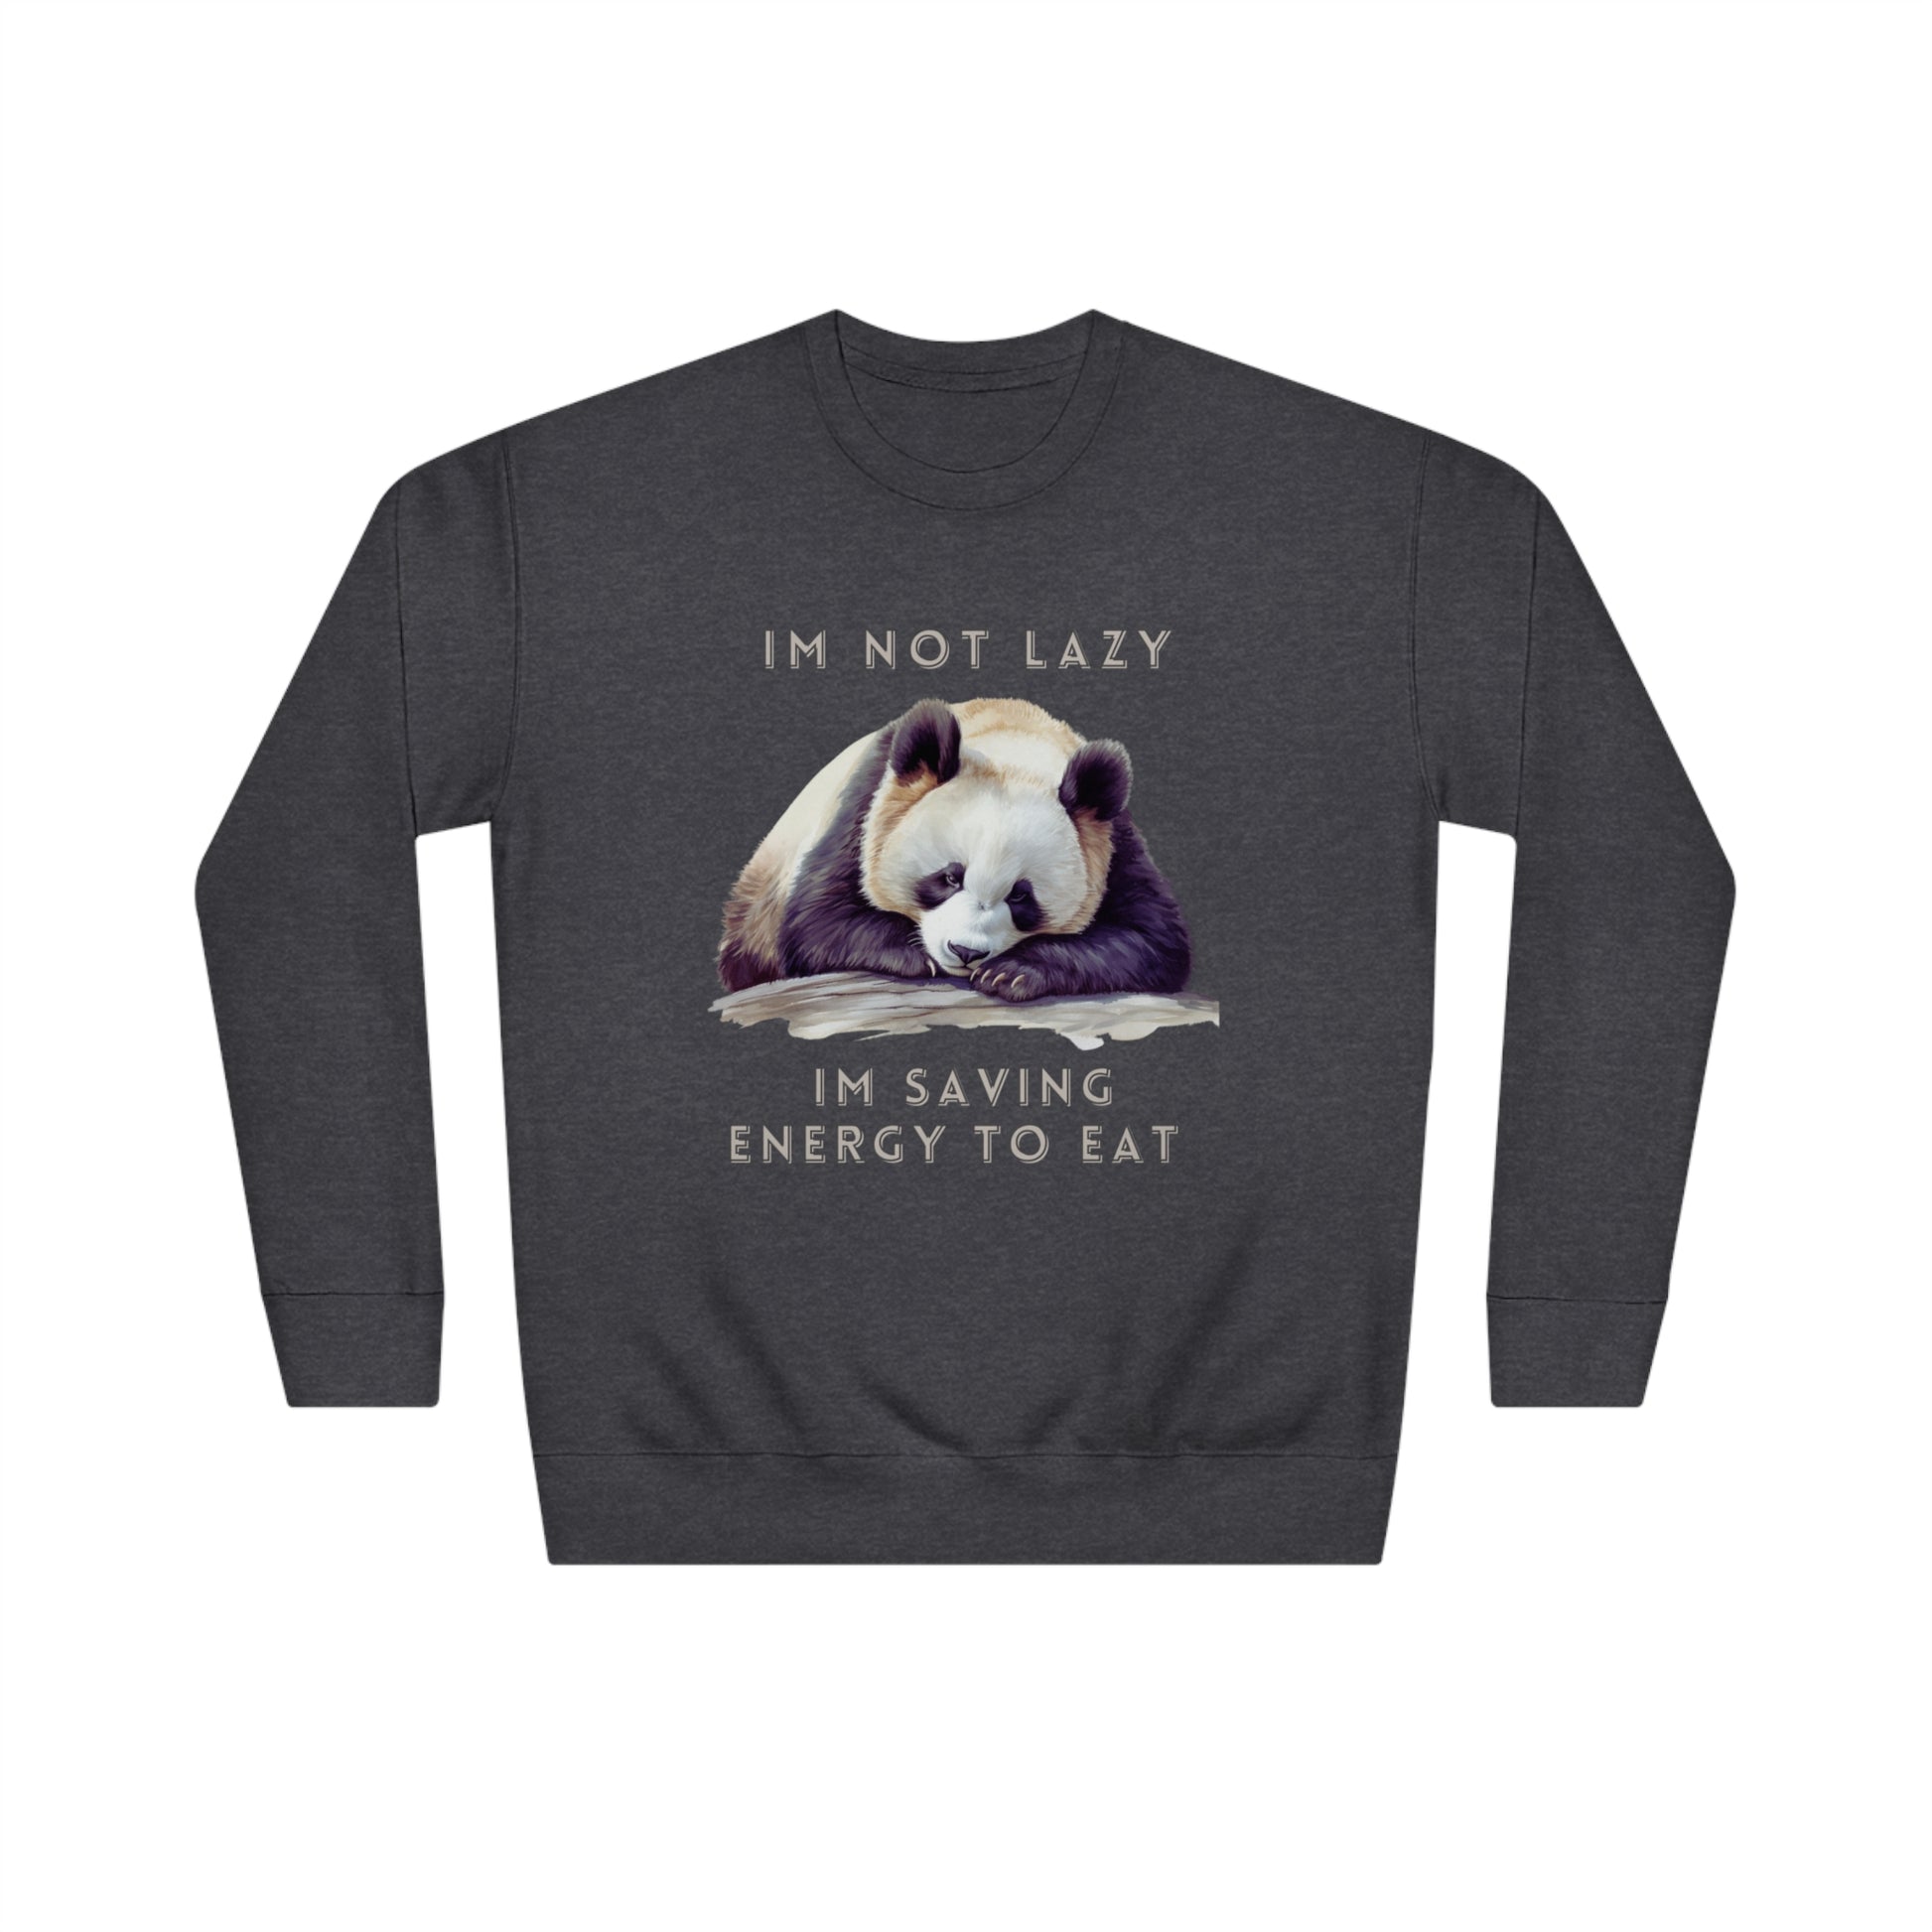 I'm Not Lazy Sweatshirt | Embrace Cozy Relaxation | Funny Panda Sweatshirt | Panda Lover Gift Sweatshirt Charcoal Heather S 